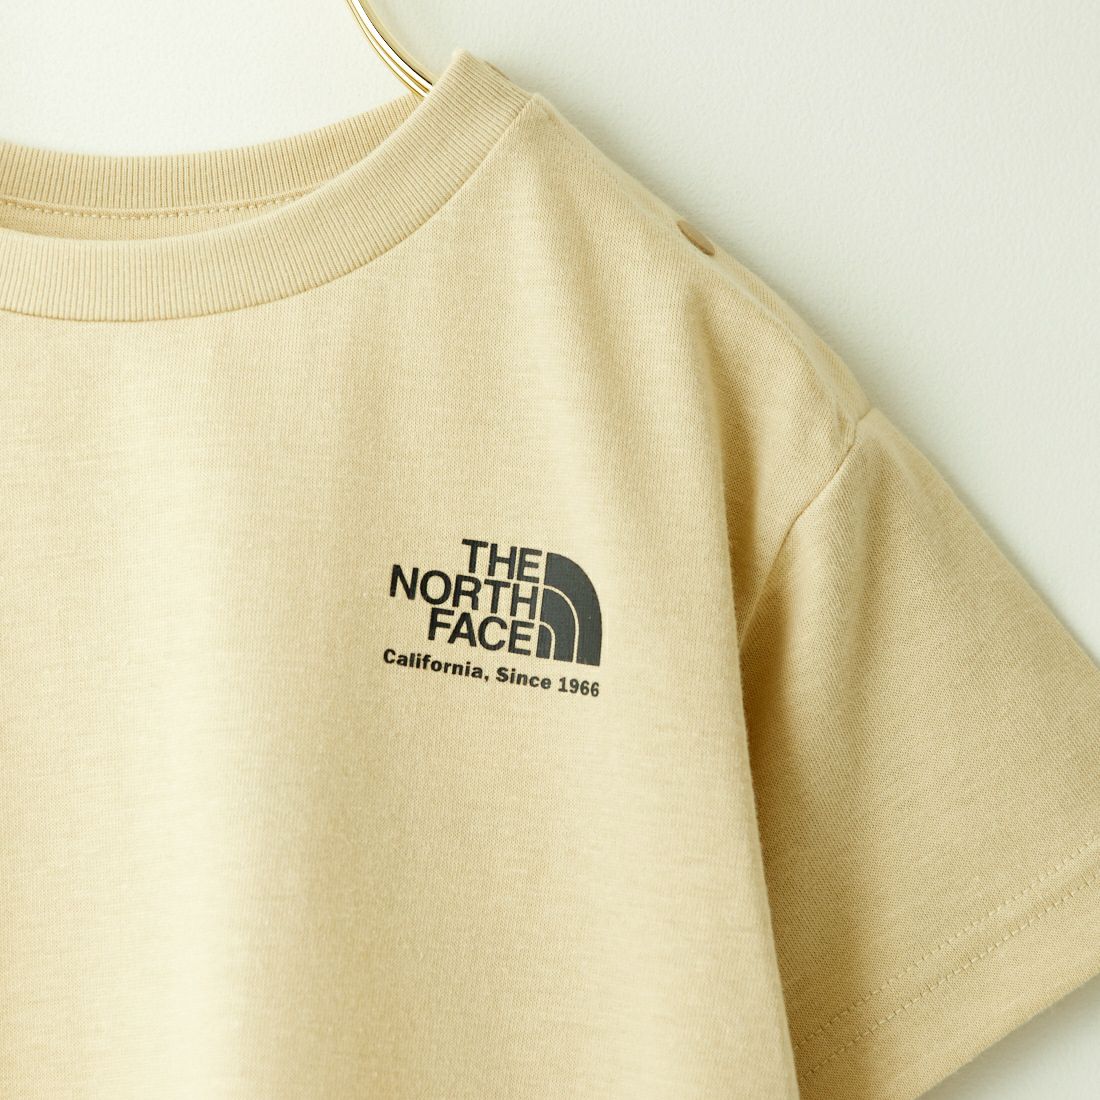 THE NORTH FACE [ザ ノースフェイス] ショートスリーブヒストリカルロゴTシャツ [NTB32356] GL